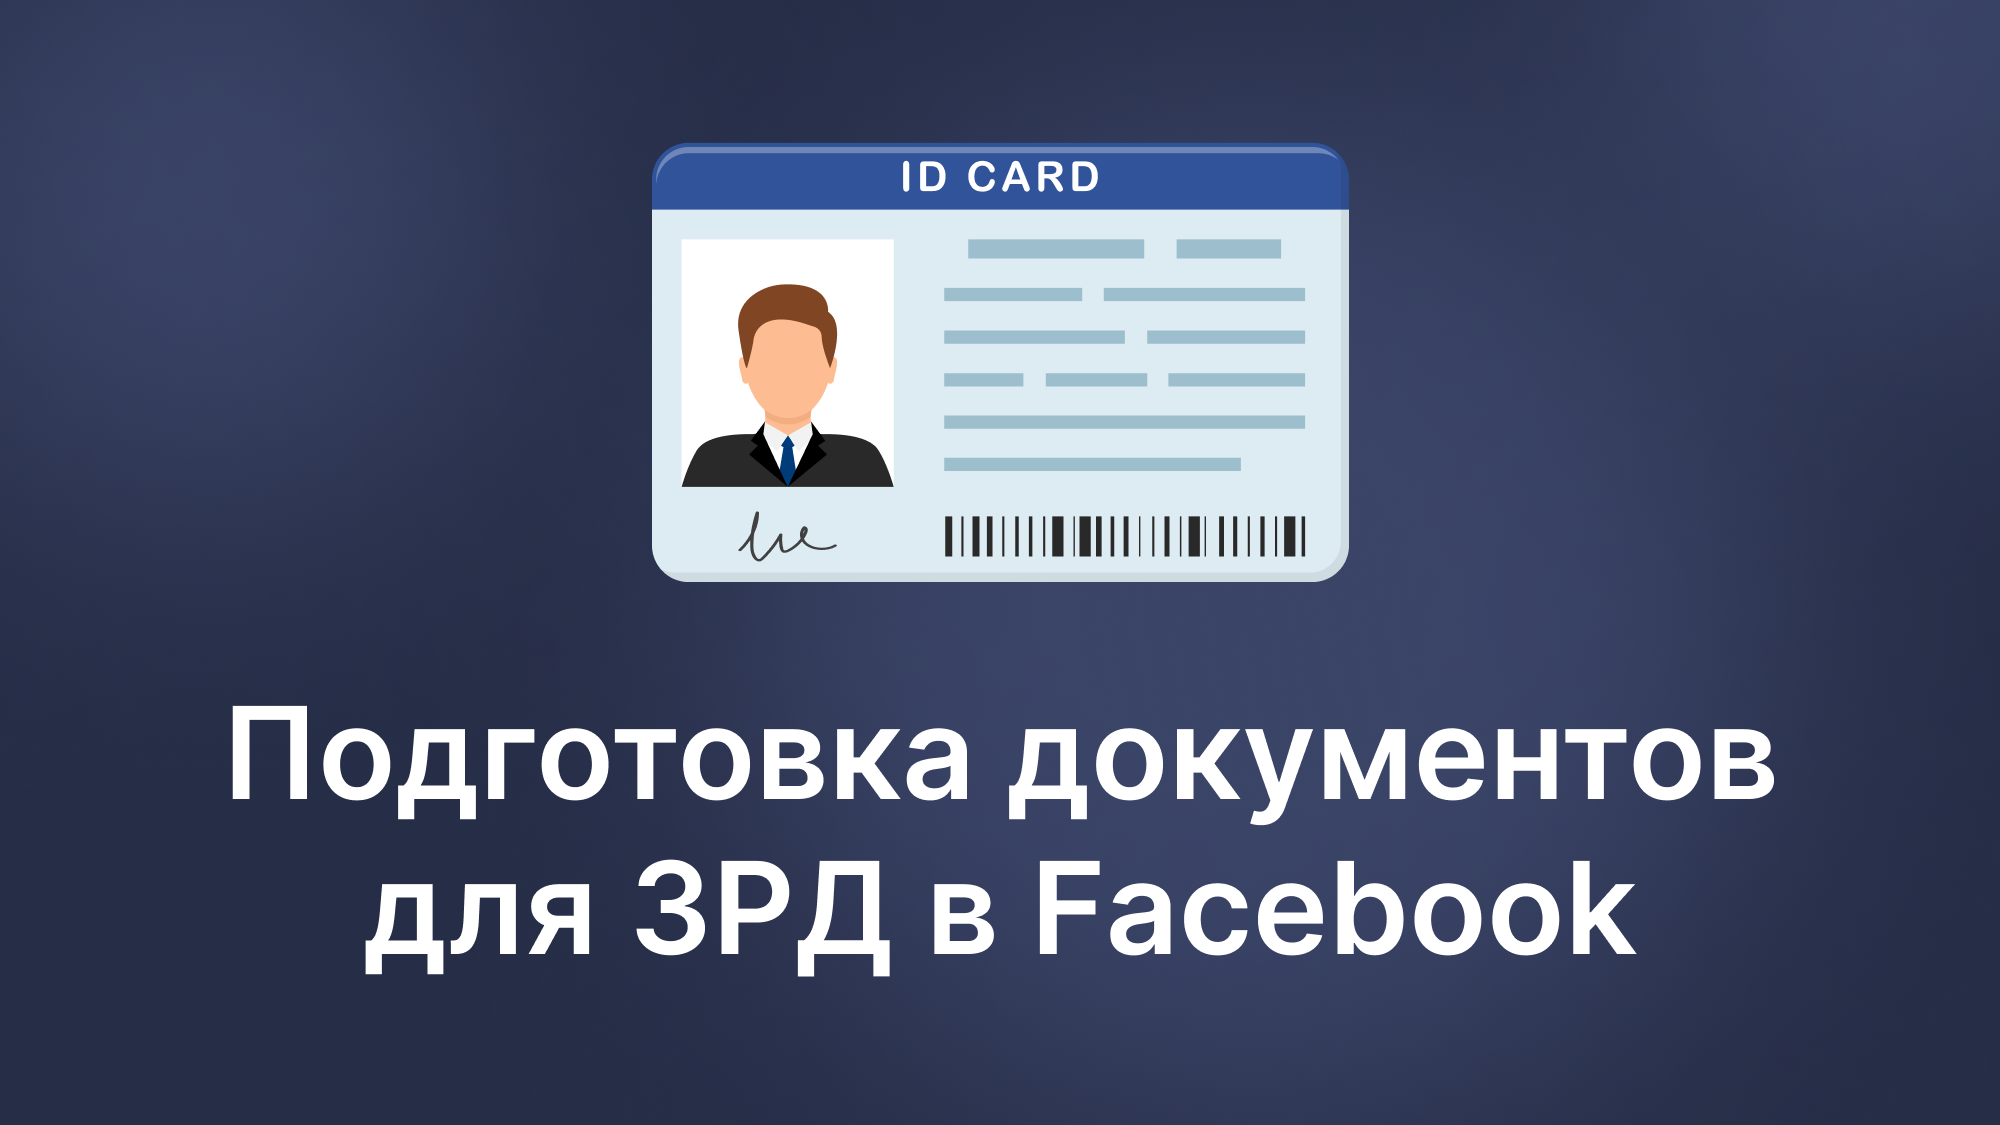 Как создать паспорт для ЗРД в Facebook